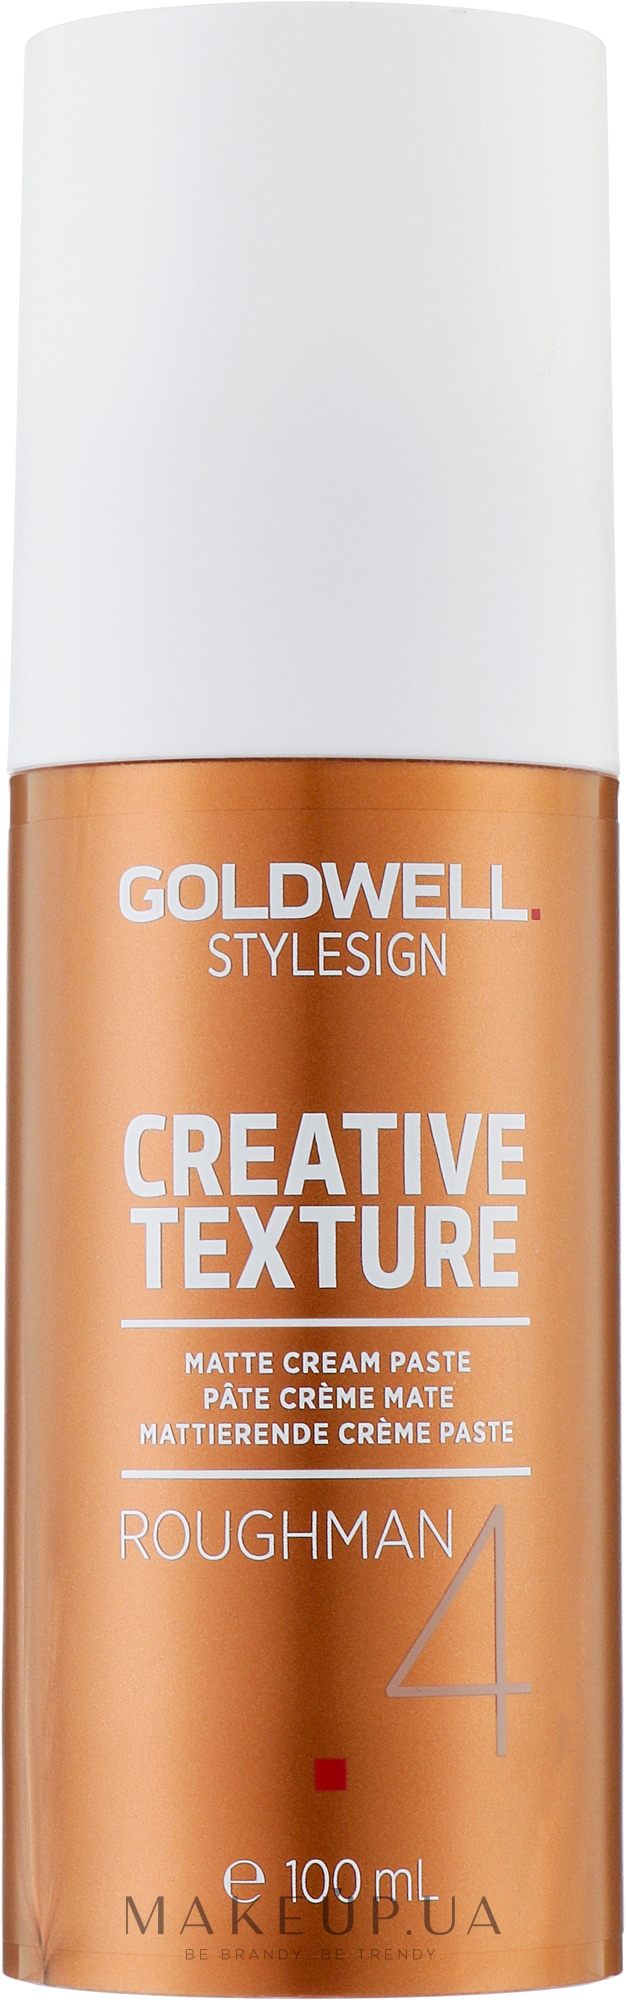 Матова кремова паста для волосся - Goldwell Style Sign Creative Texture Roughman — фото 100ml